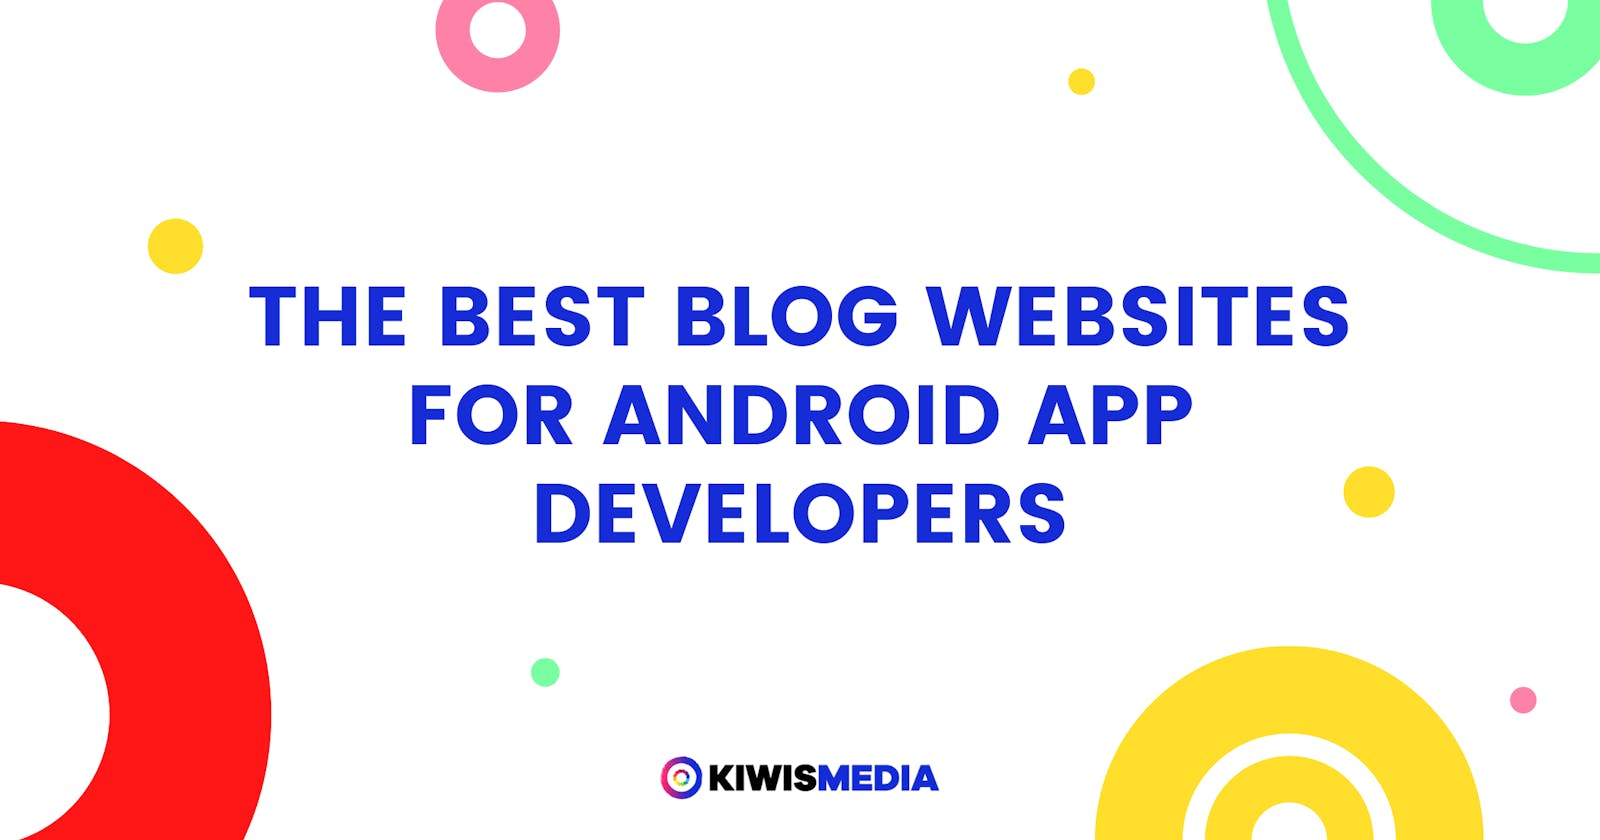 Best Blog Websites for Android App Developers